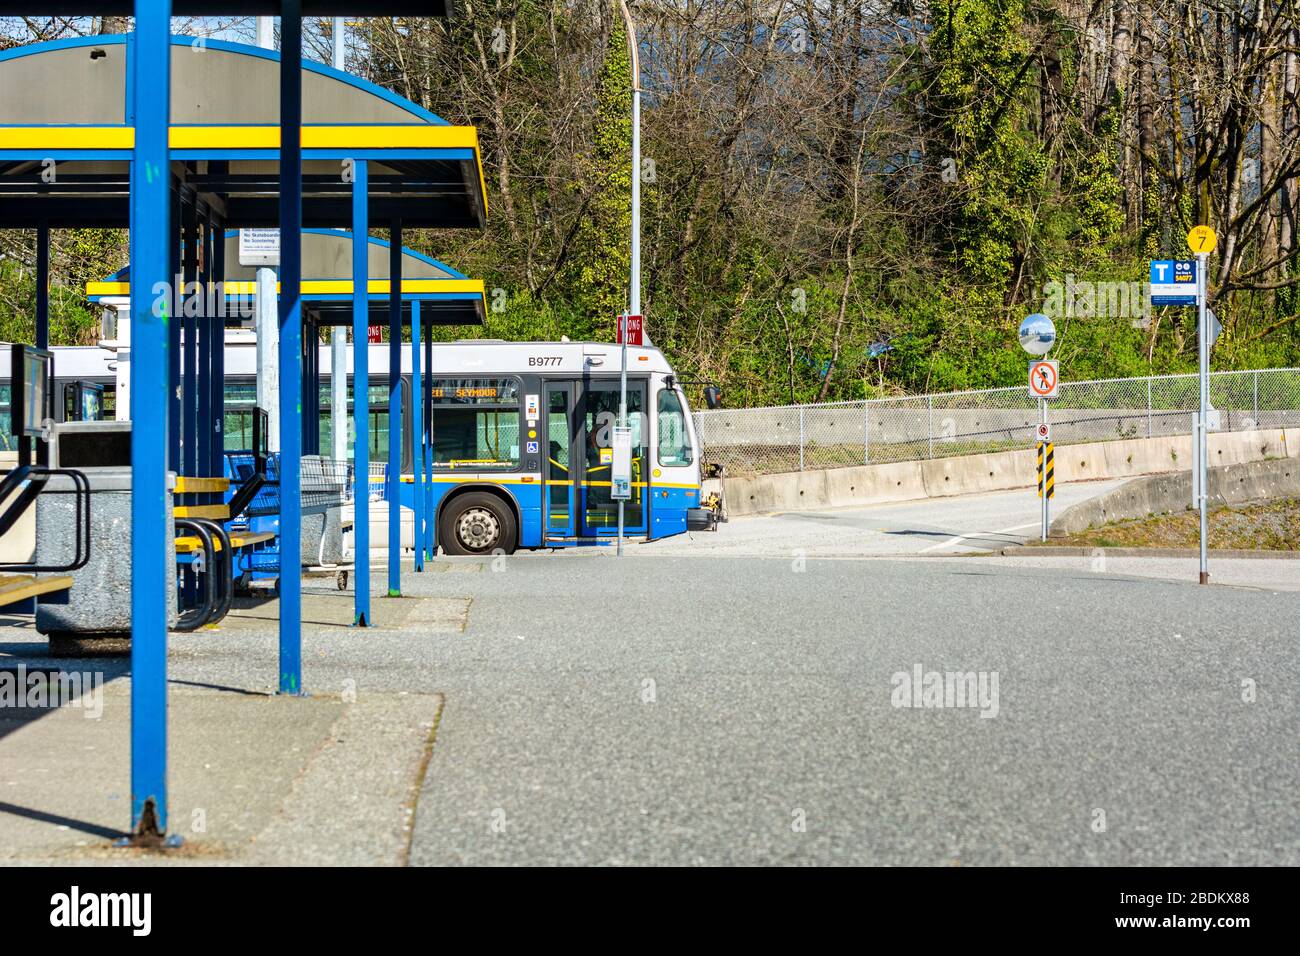 VANCOUVER, Canada - 7 aprile 2020: Praticamente deserta scambio di autobus di trasporto pubblico, a metà mattina, durante la pandemia Coronavirus Covid-19 Foto Stock